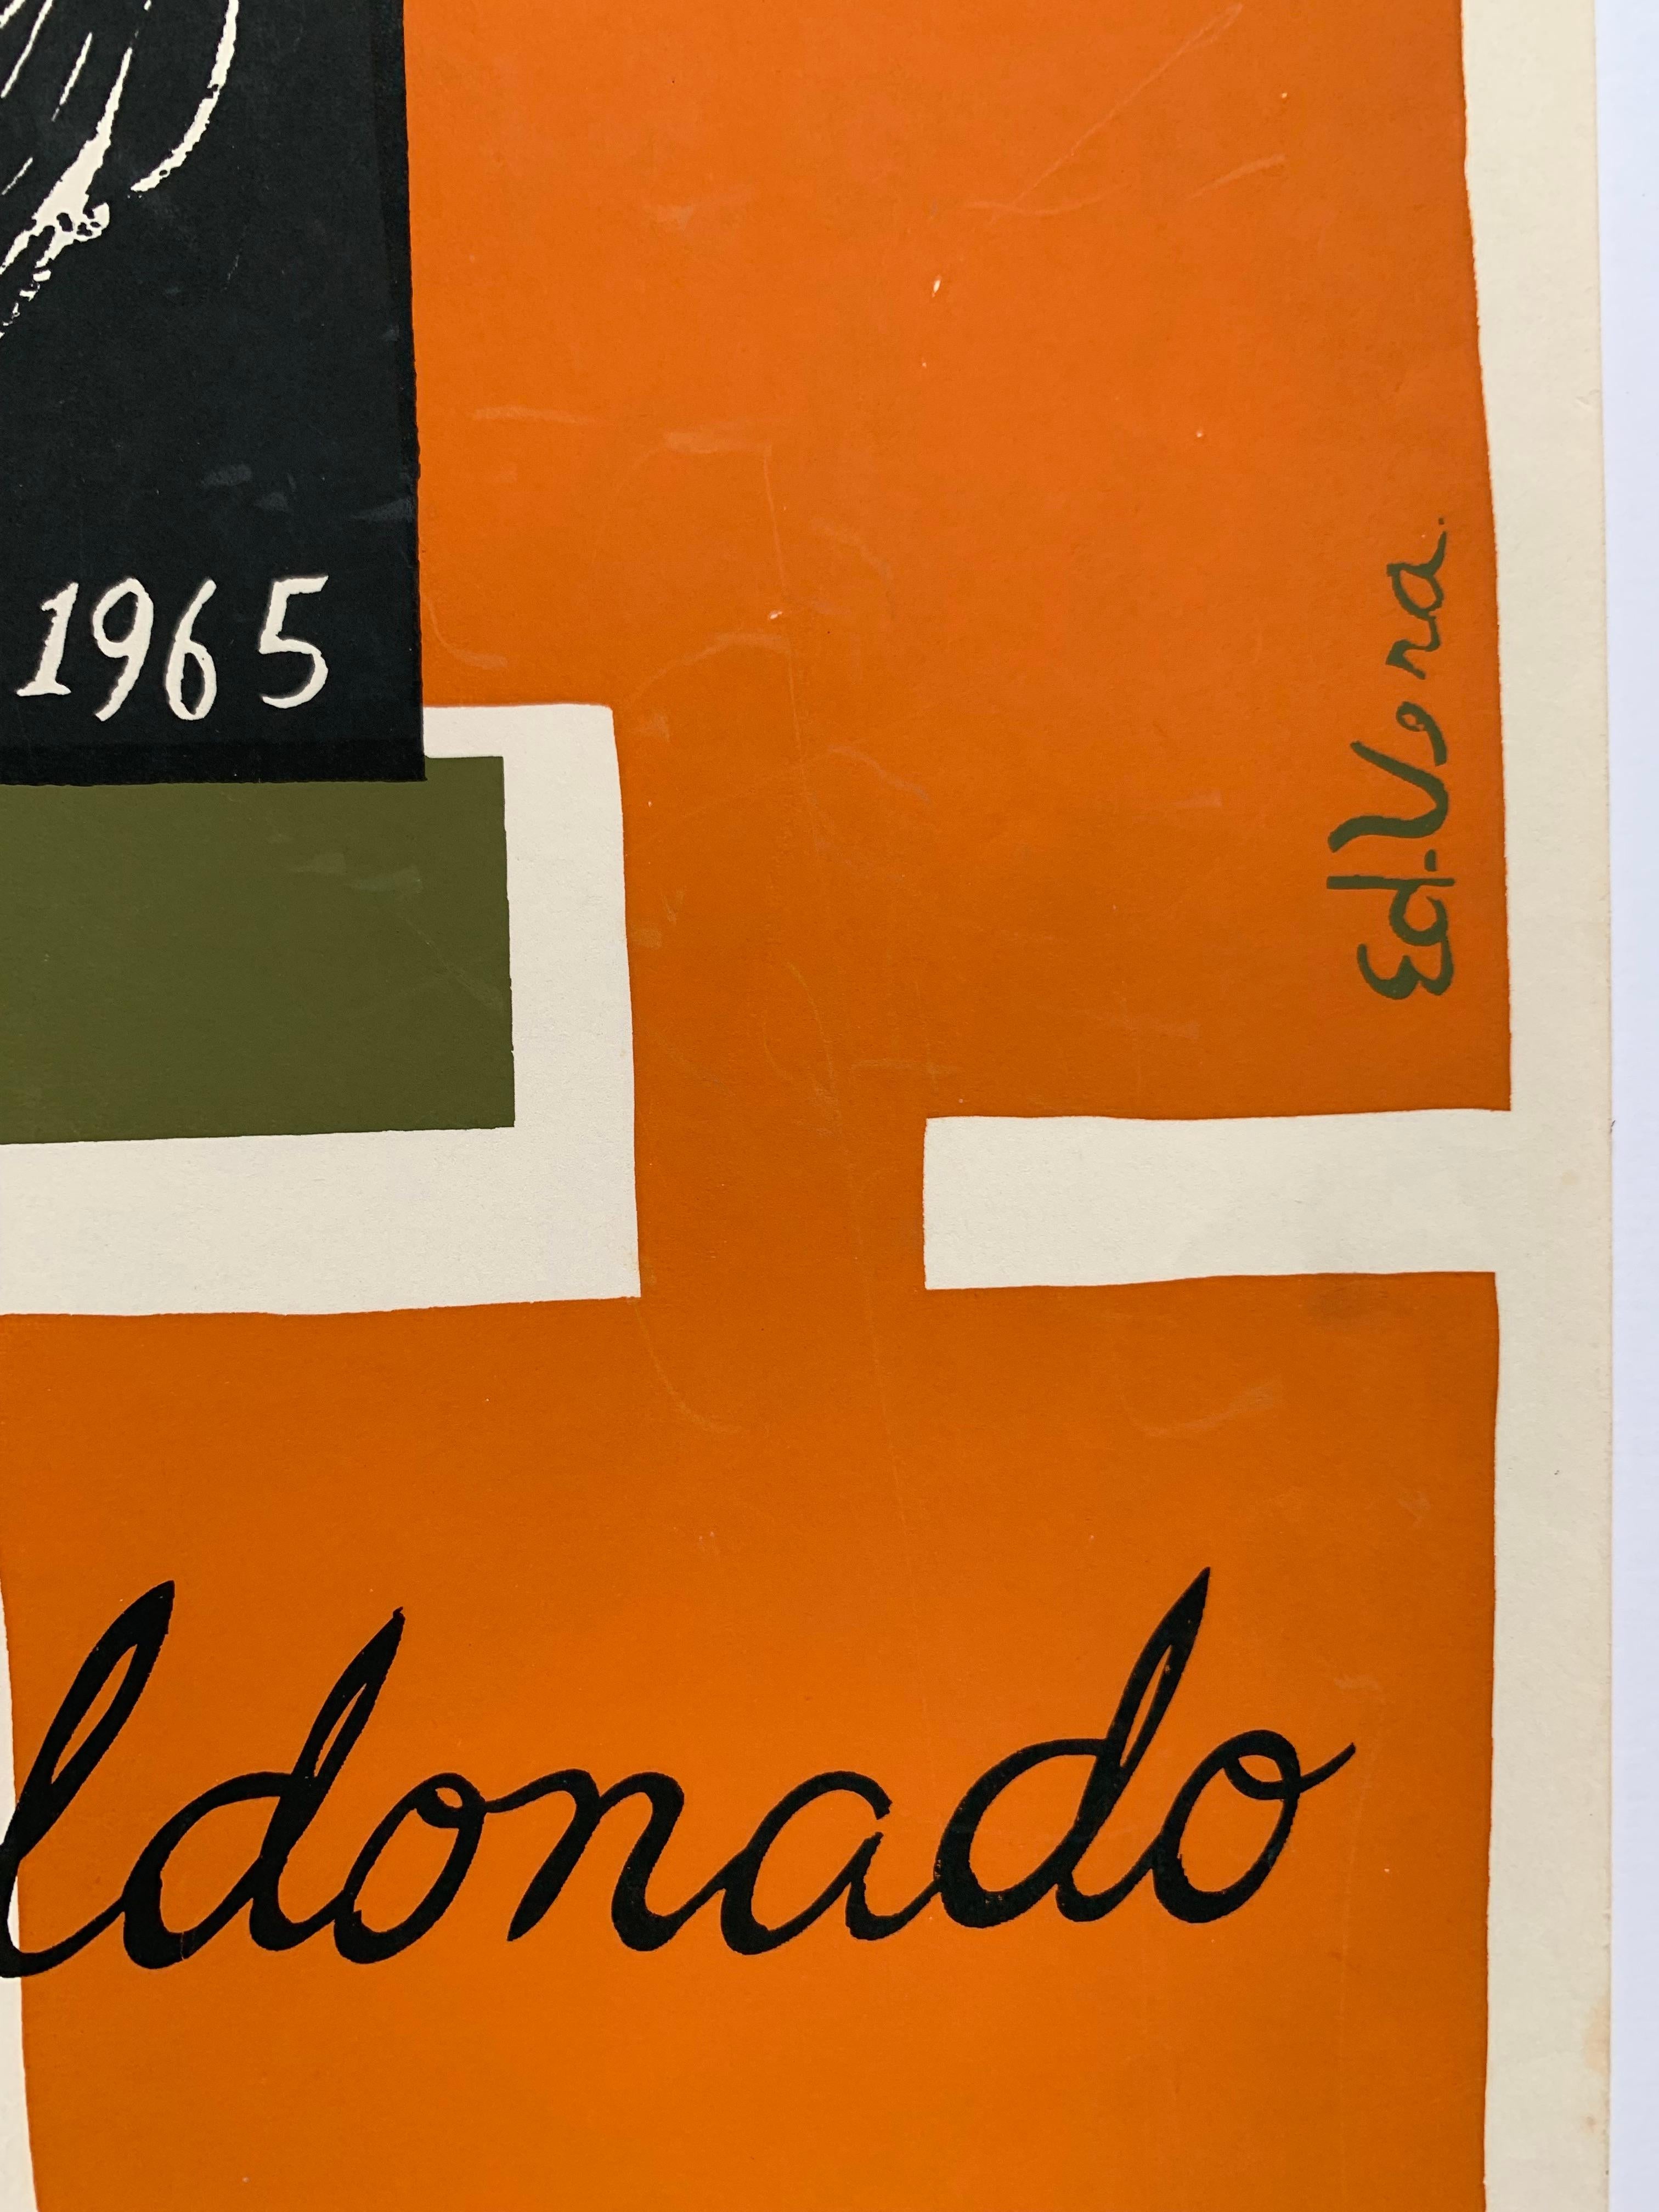 Rare exhibition poster by Puerto Rican artist Eduardo Vera Cortes (1926-2006). Exposicion de Pinturas de Antonio Maldonado, 1965. Screen print on paper, 17.5 x 25 inches. So wear and creasing in margins as depicted in detail photos. 

Graphic